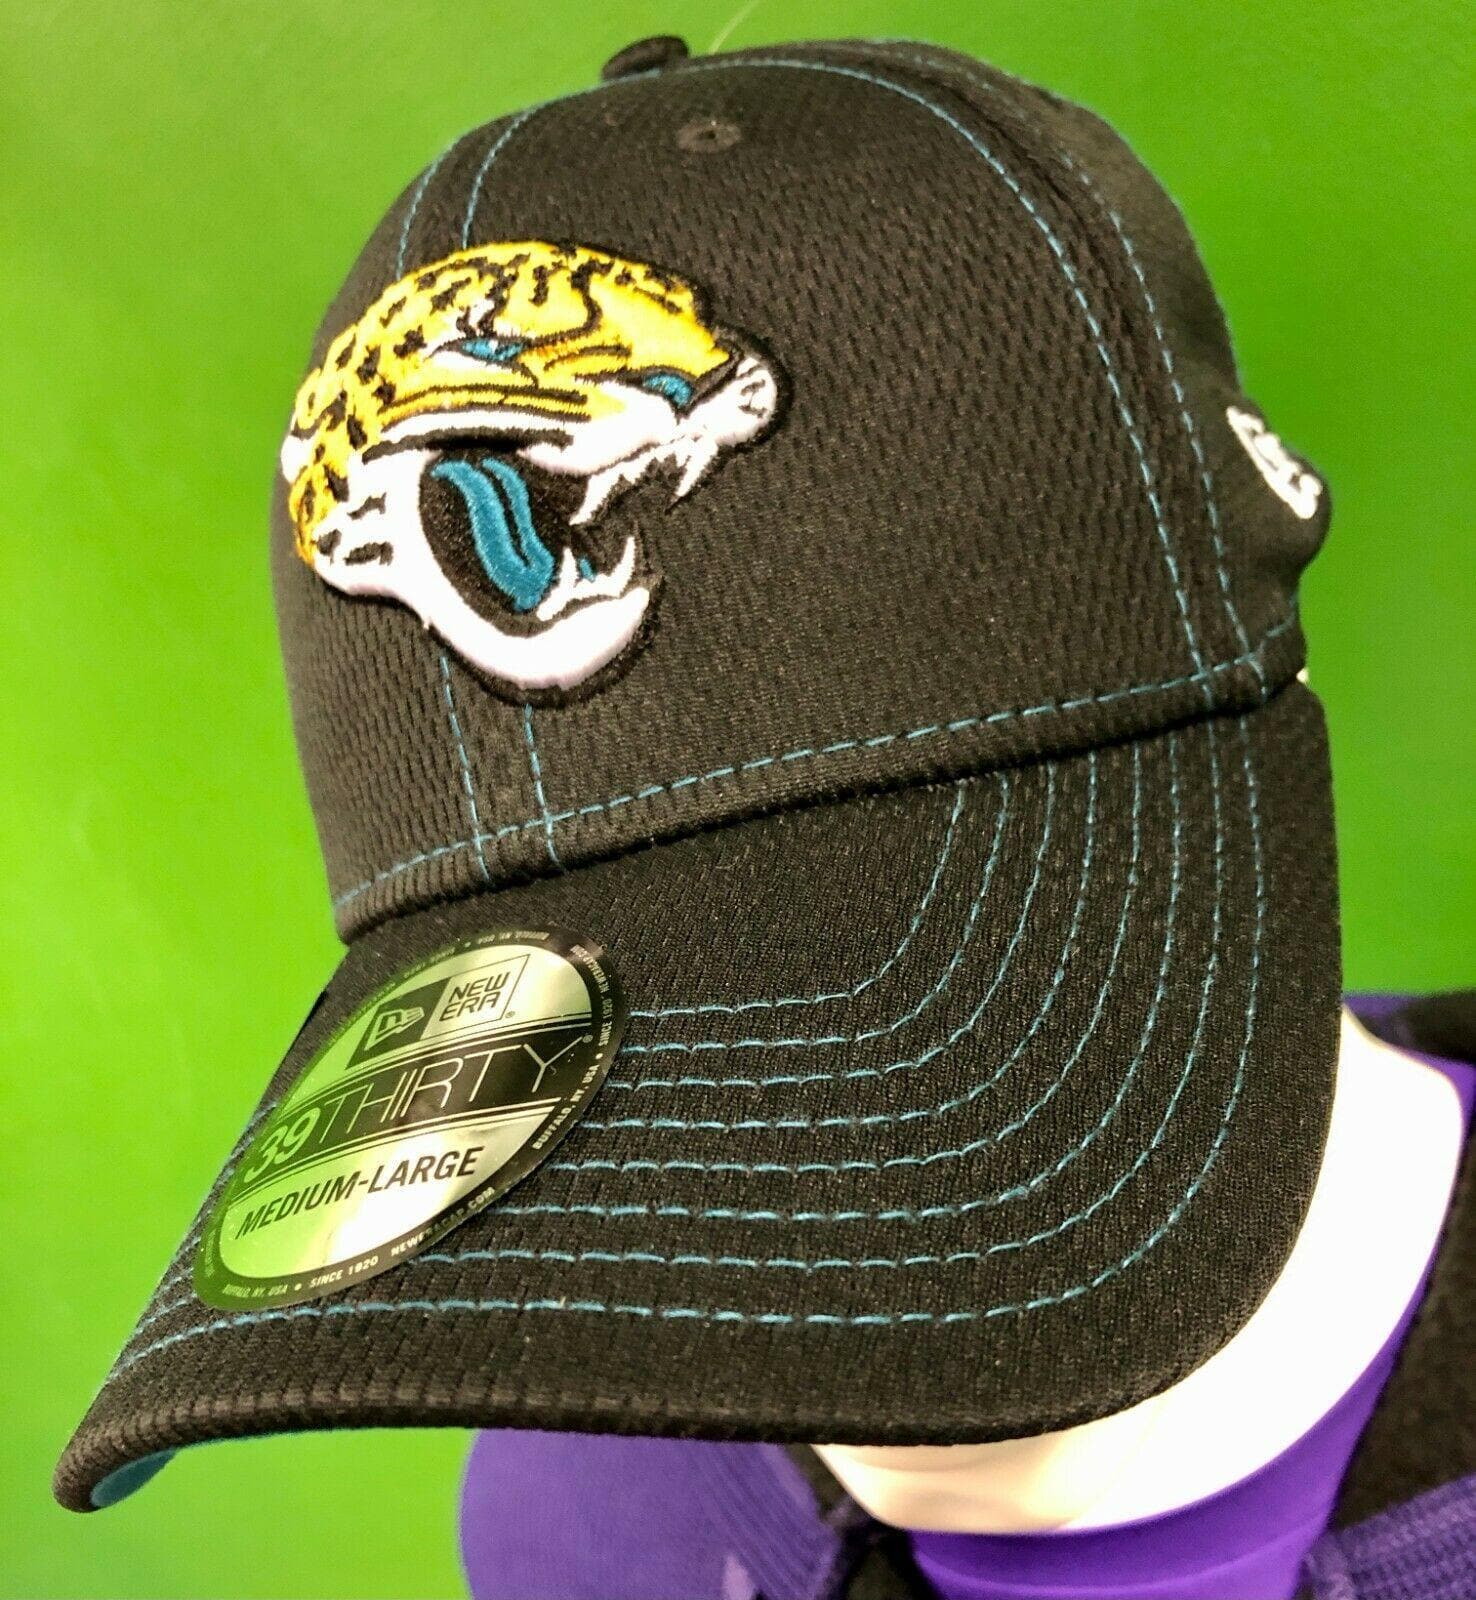 NFL Jacksonville Jaguars New Era 39THIRTY Sideline Hat Cap NWT Med-Large